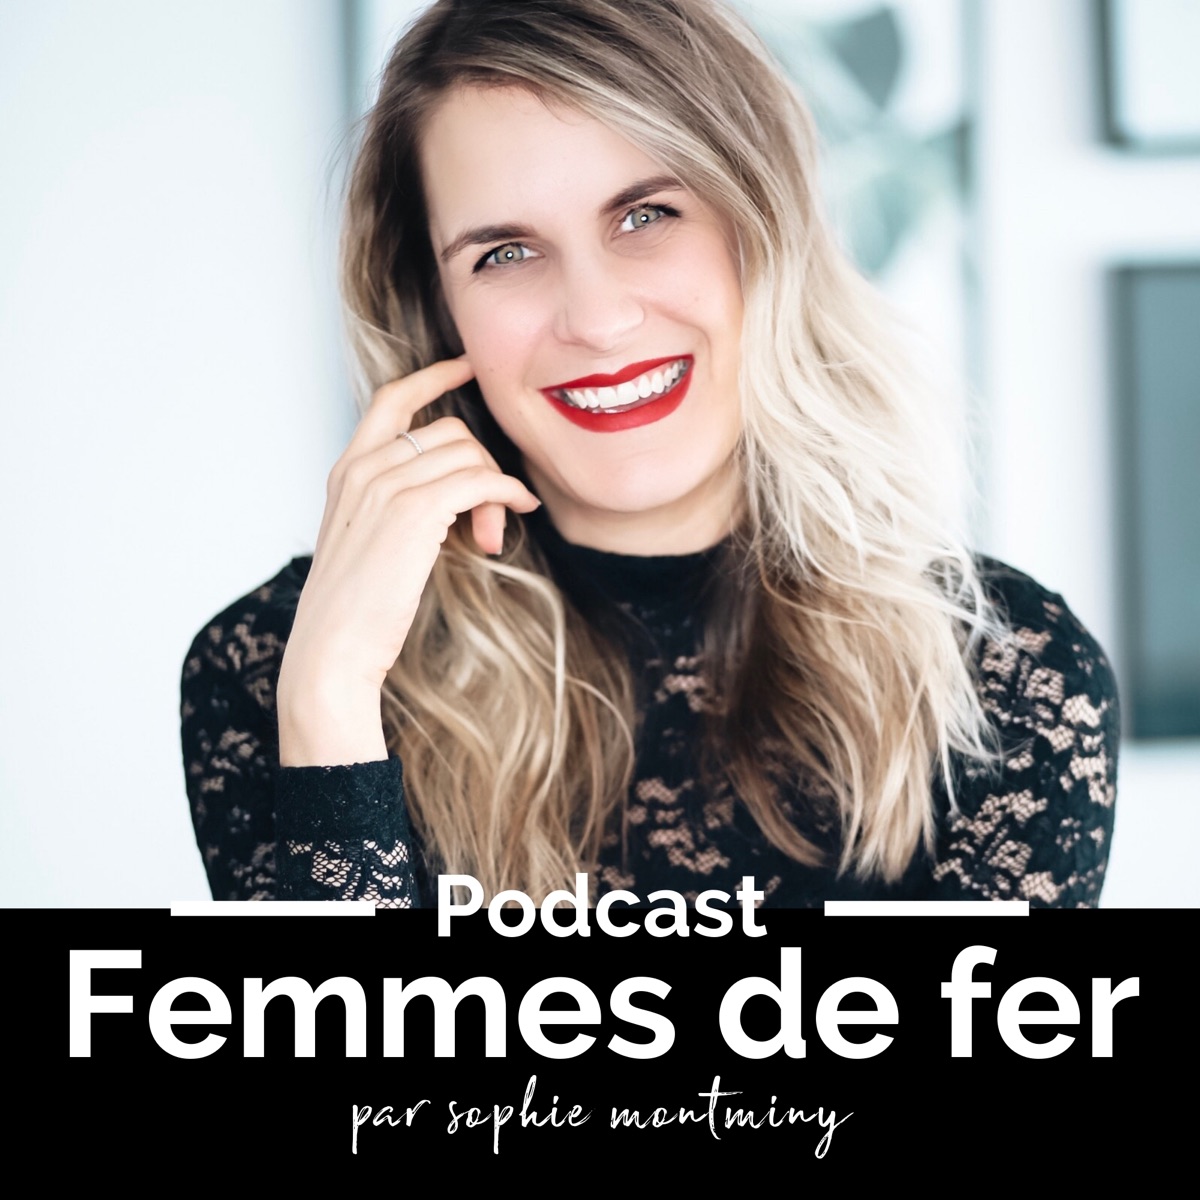 Femmes de fer podcast